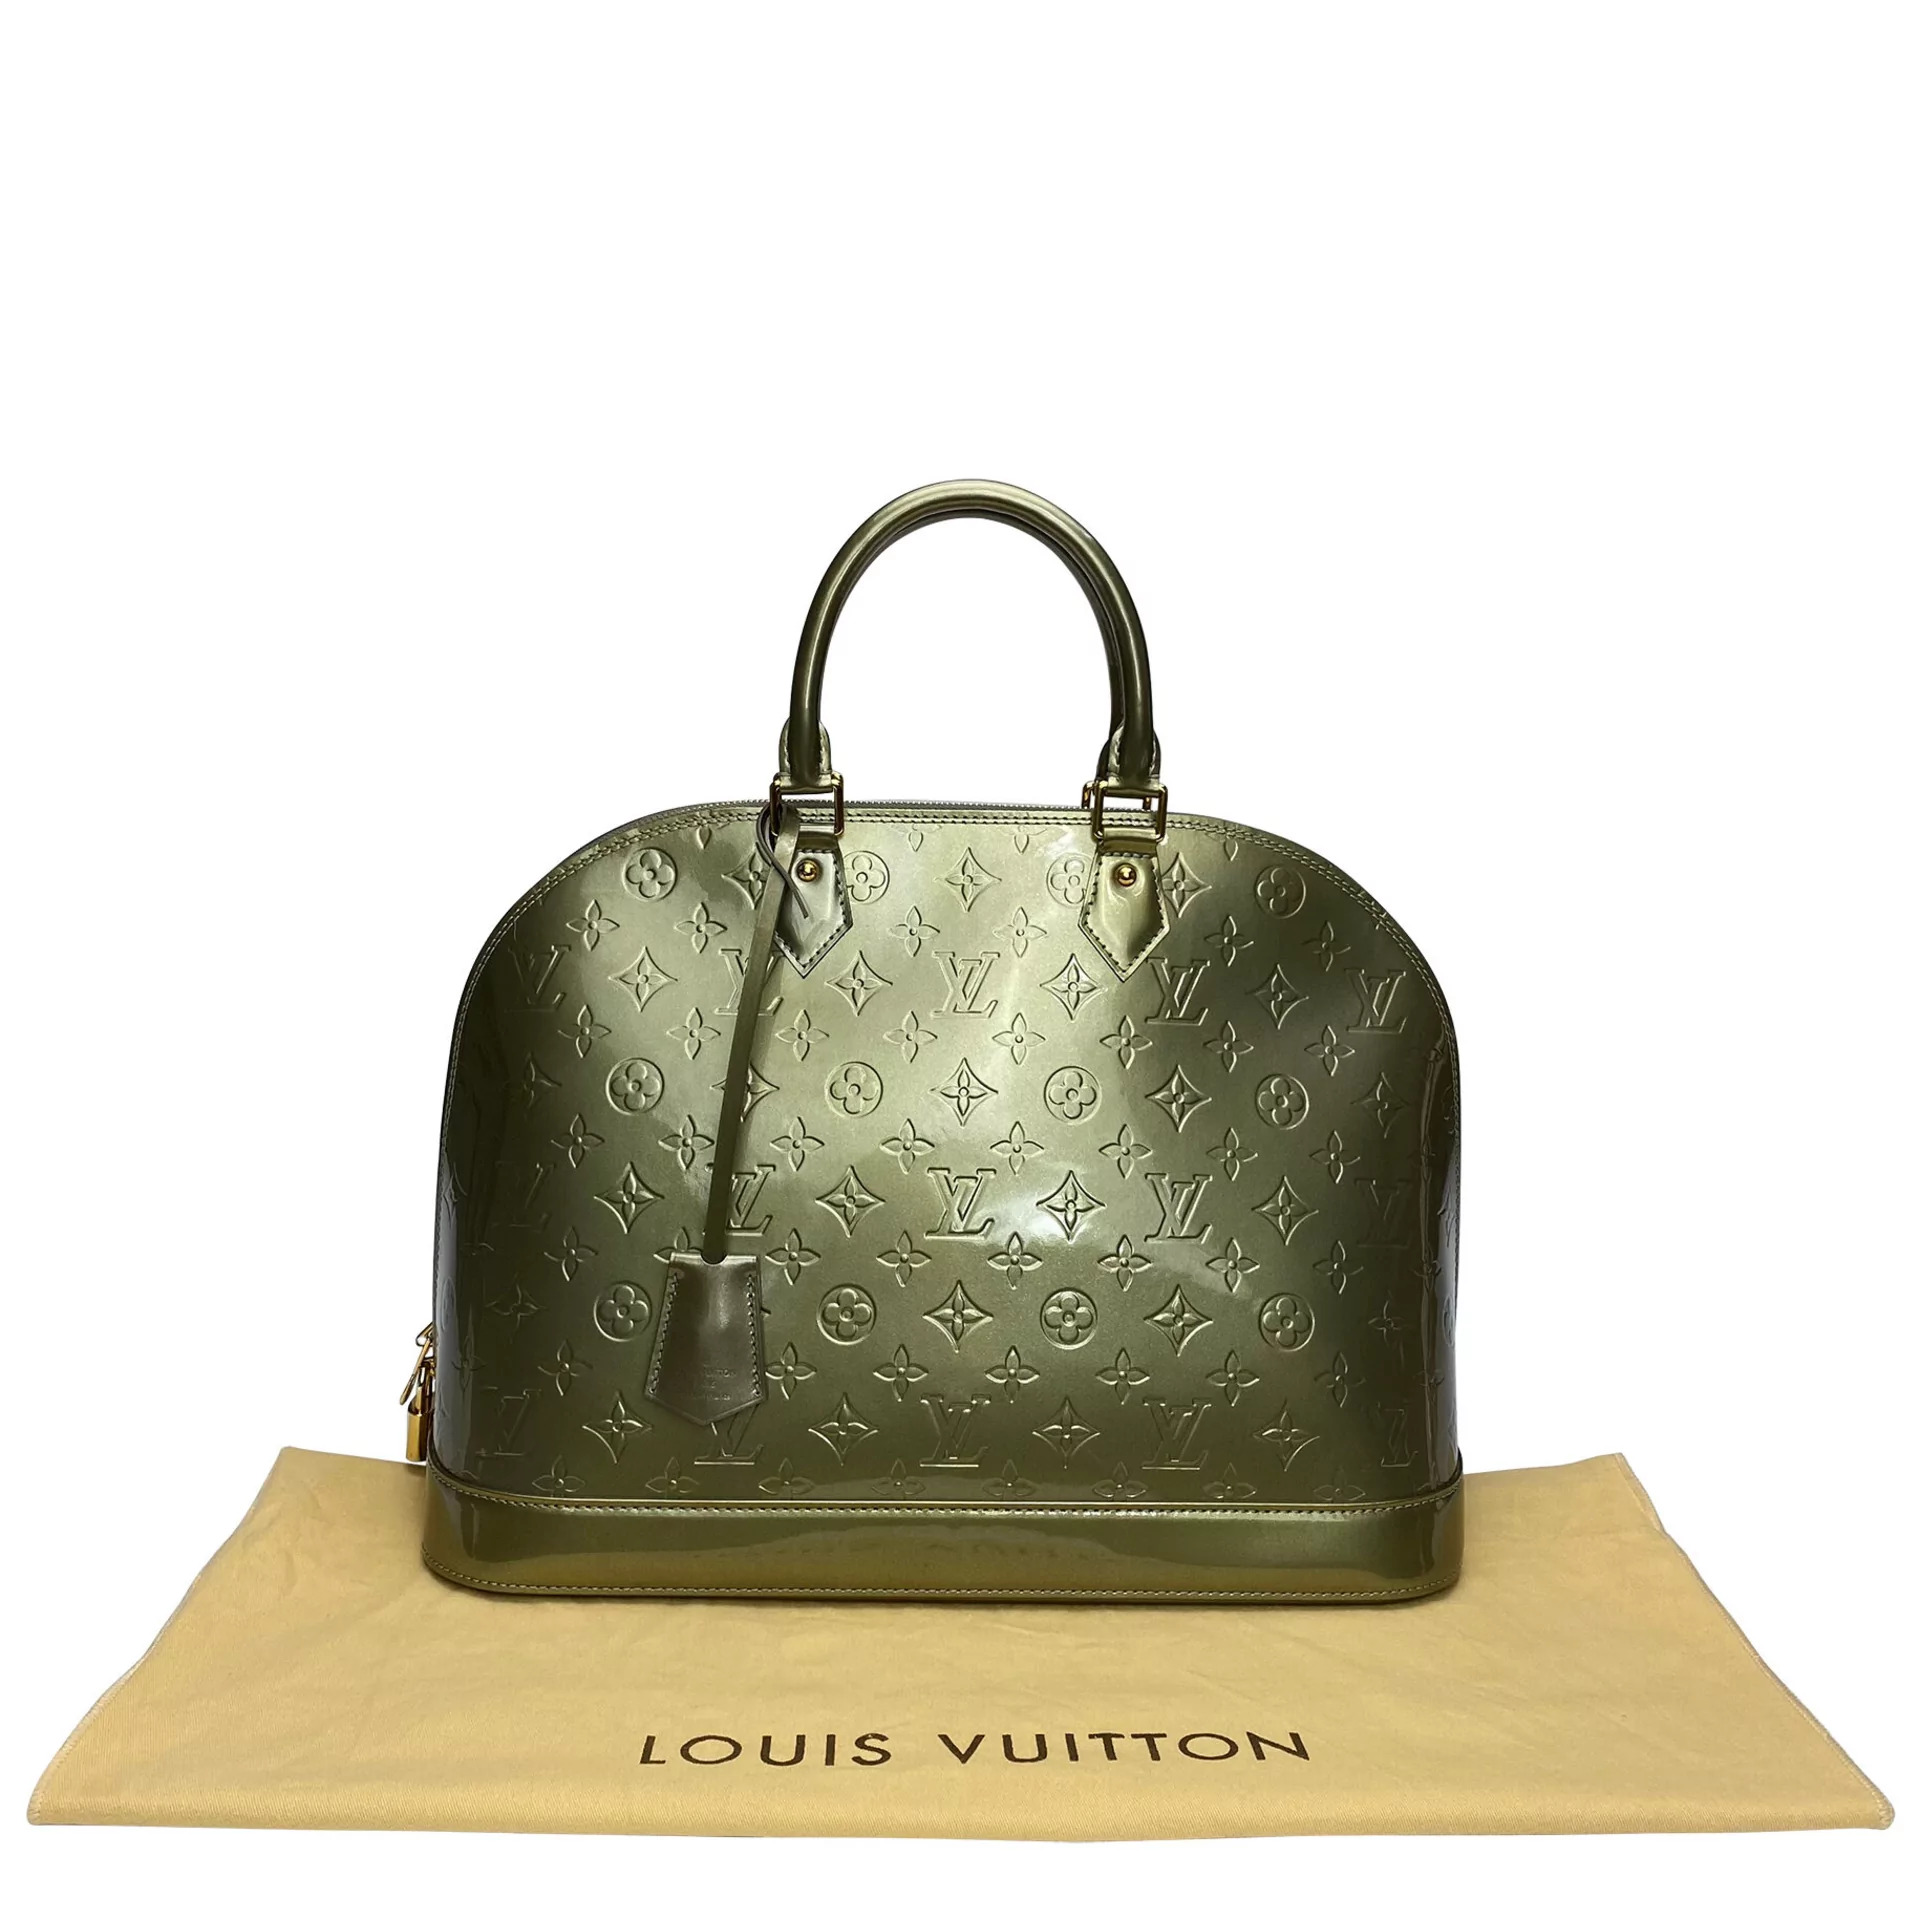 Léo Santana desfila com necessarie da Louis Vuitton: 'Bem